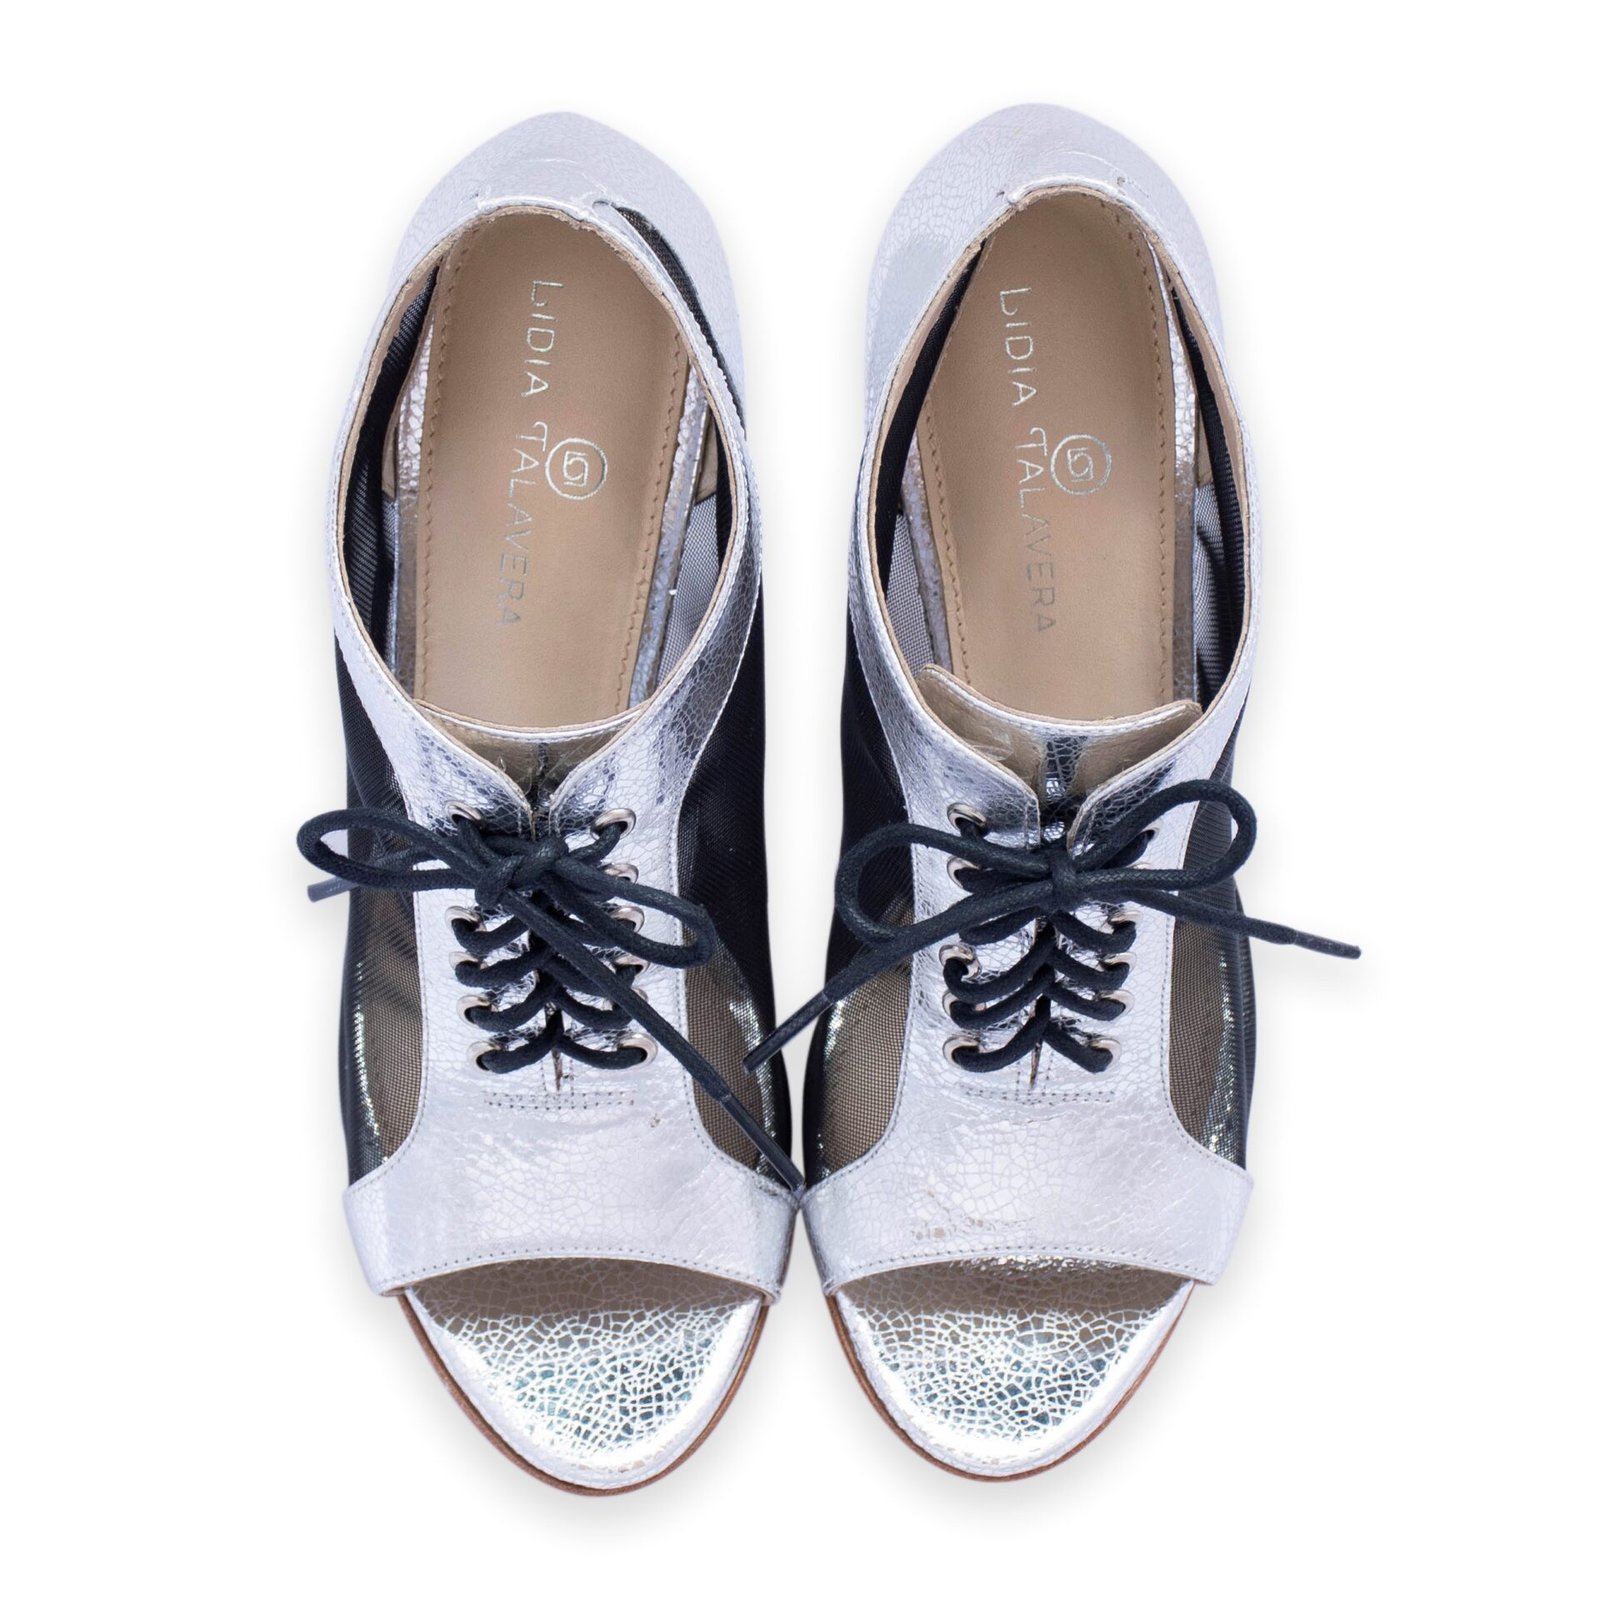 silver bootie heels for men & women